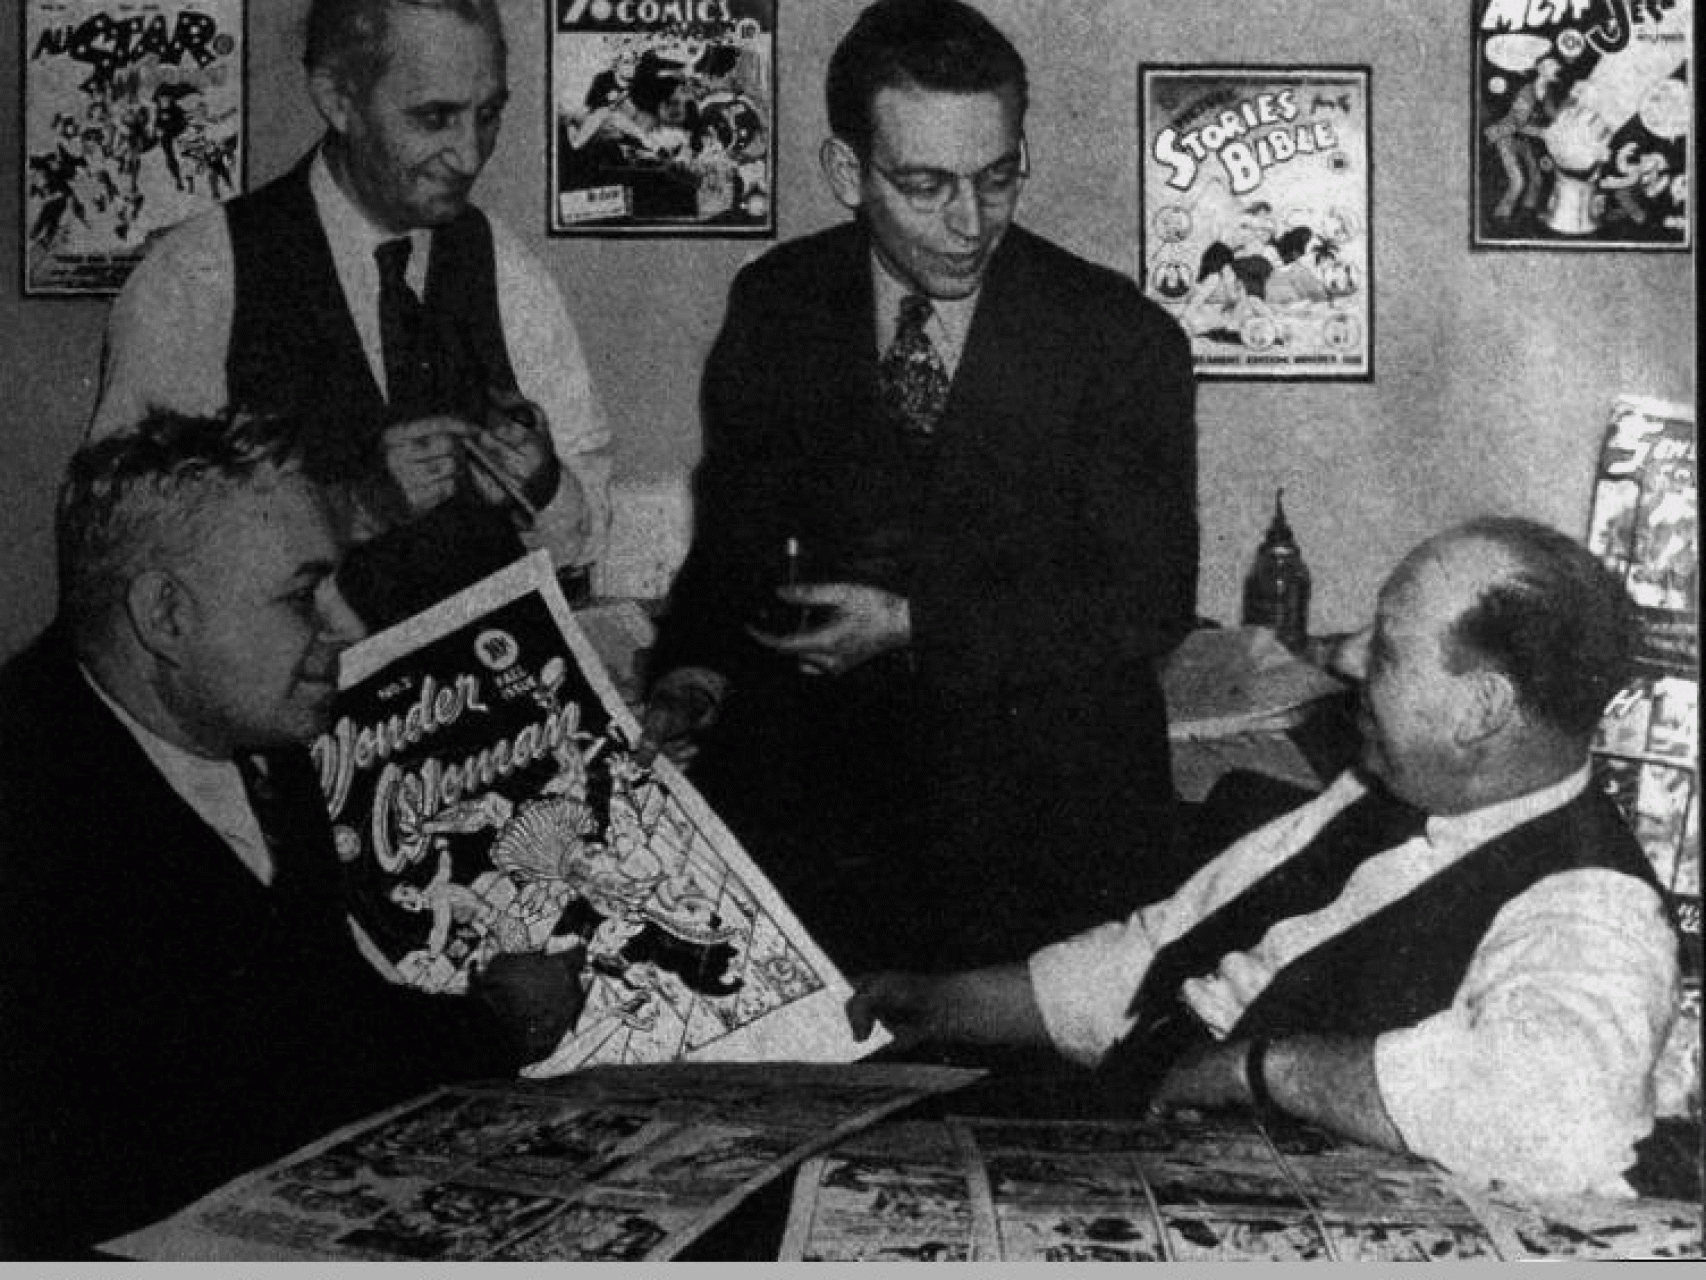 Moulton sostiene su ejemplar de Wonder Woman.